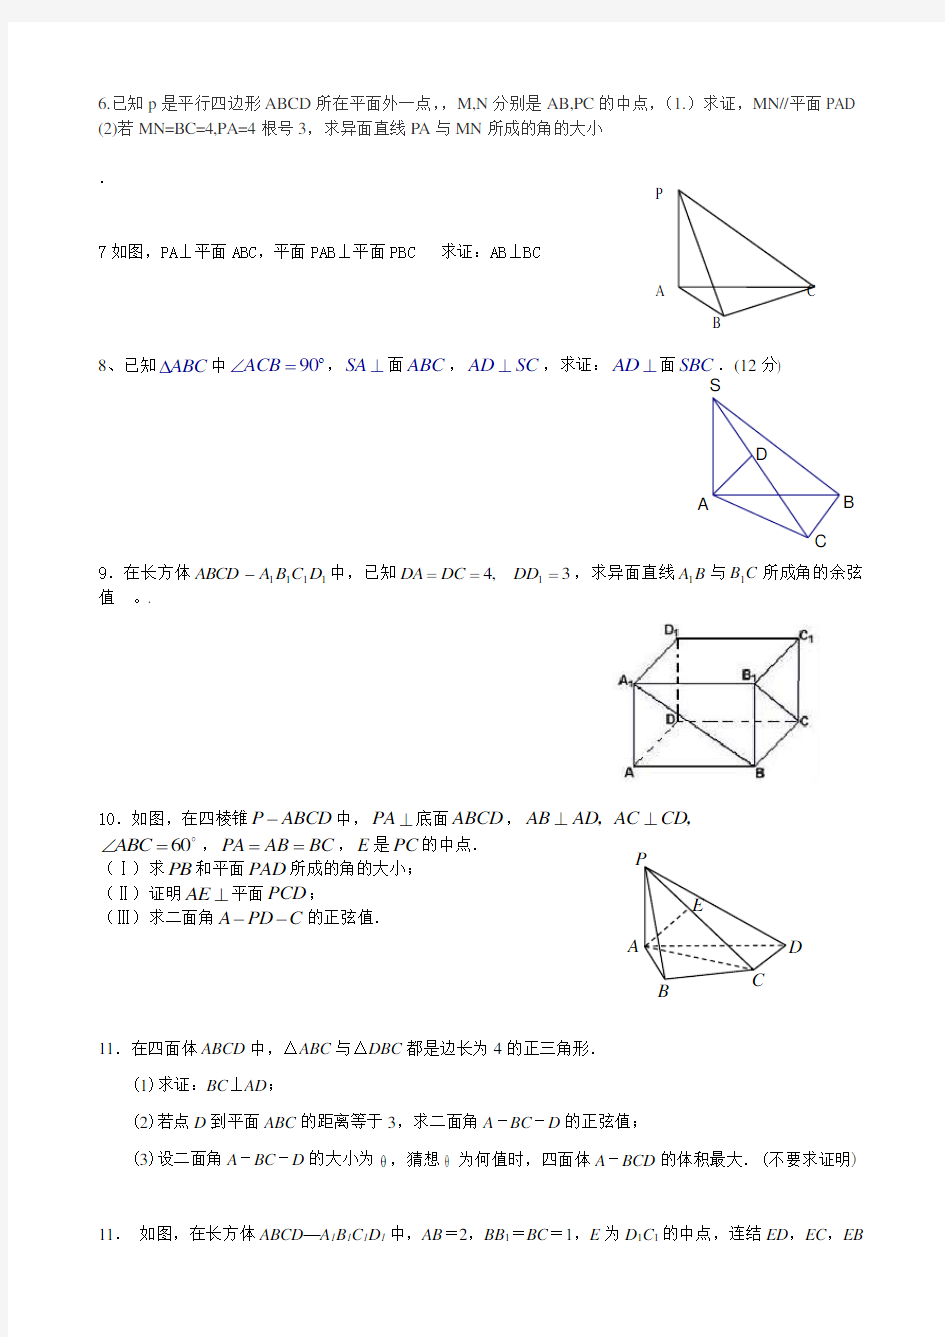 必修二-空间几何体和点线面之间的位置关系-解答题集锦